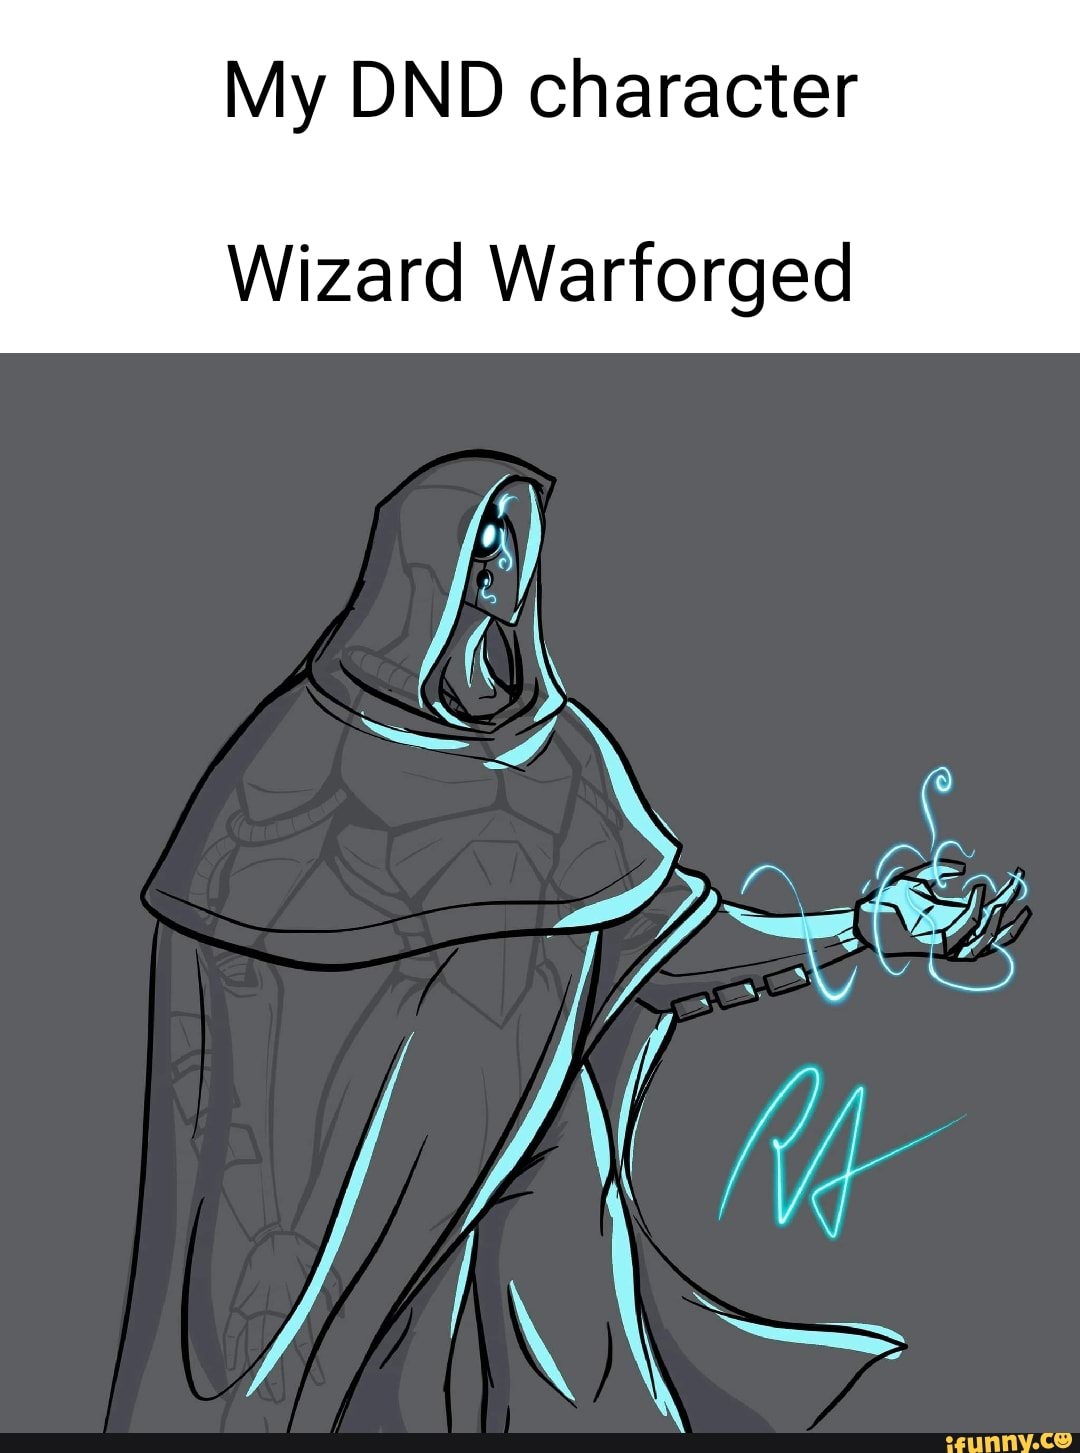 dandd warforged wizard